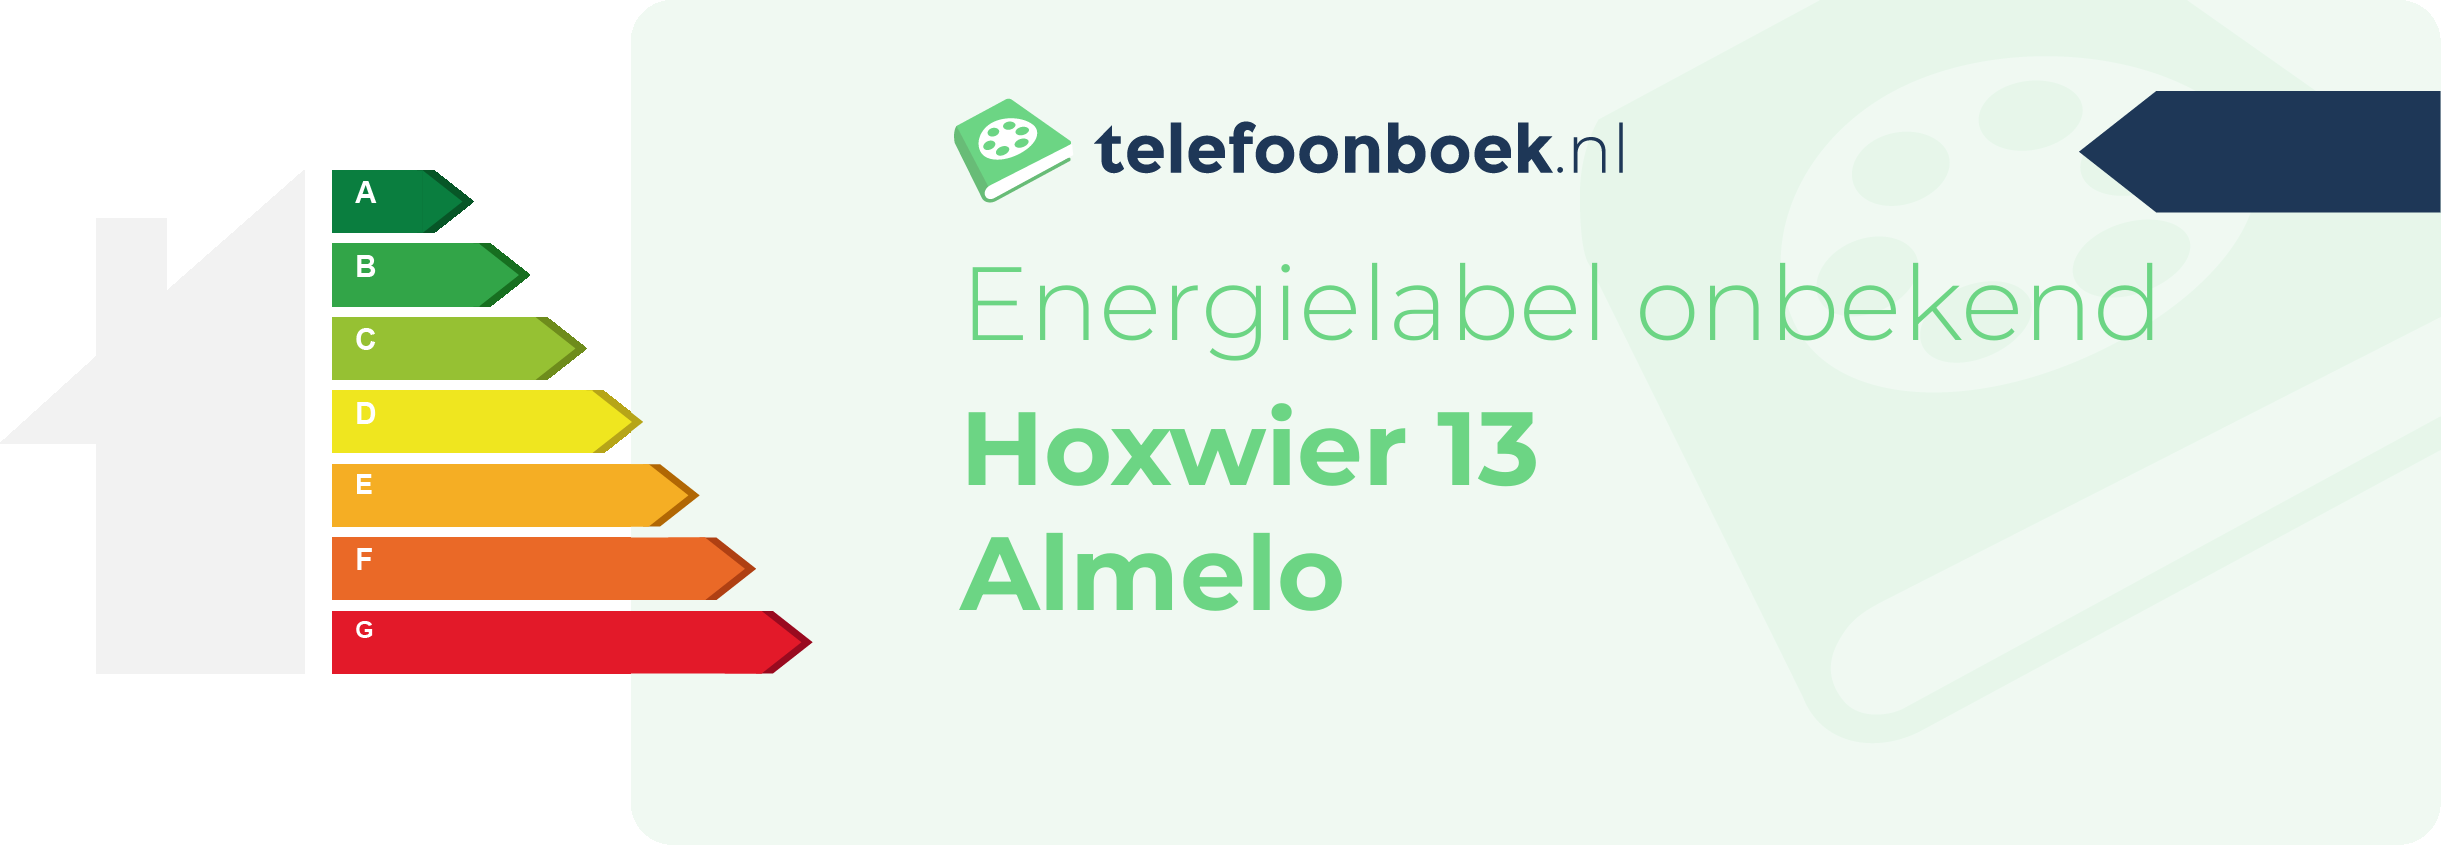 Energielabel Hoxwier 13 Almelo